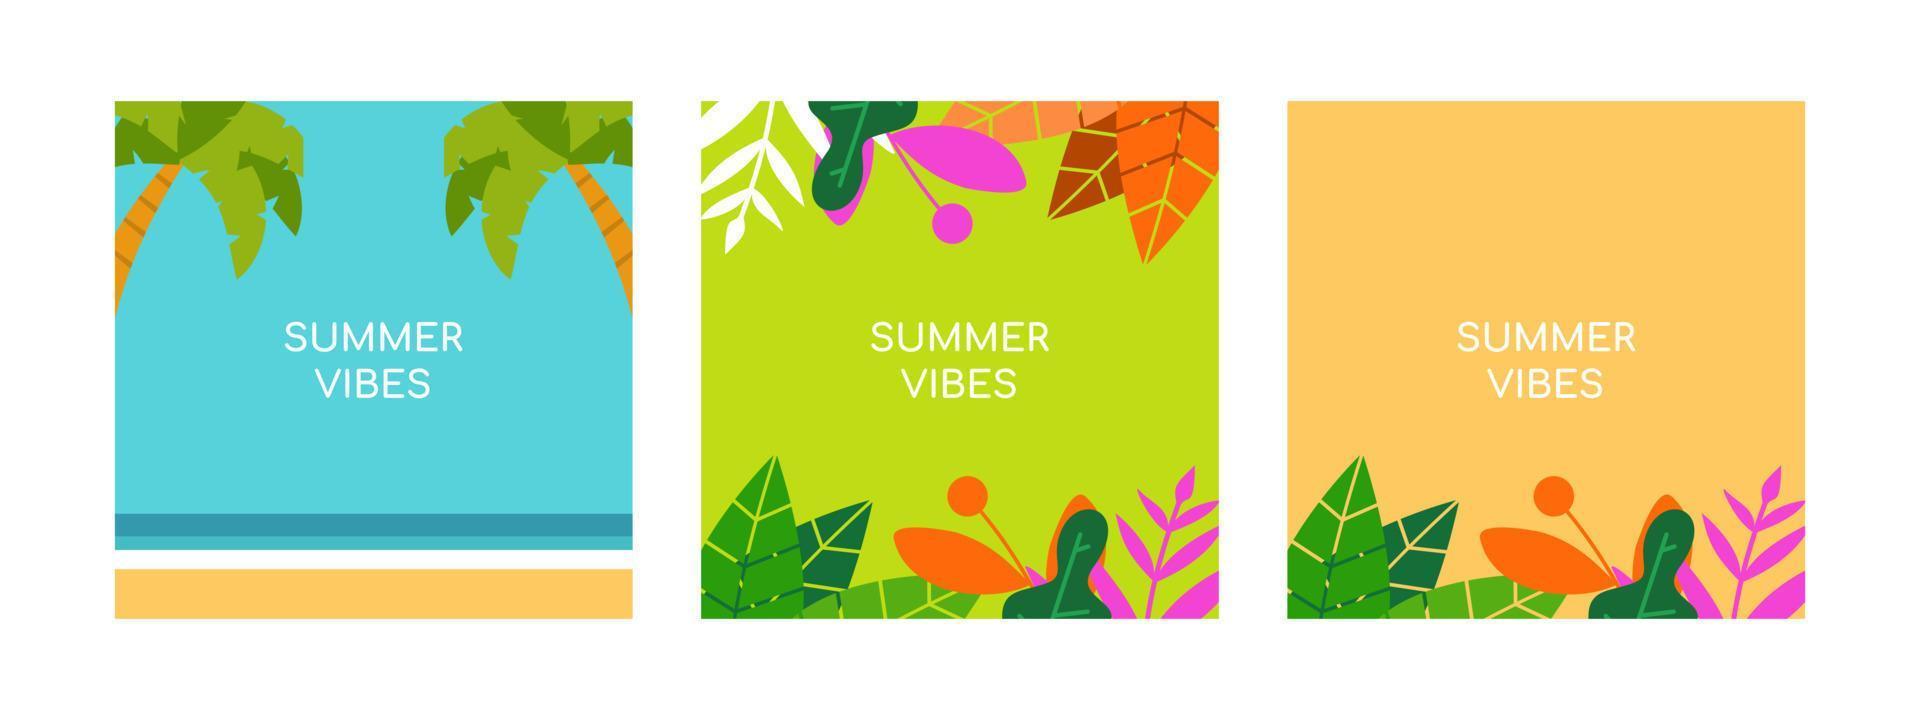 Hallo zomer vectorillustratie voor sociale media ontwerp sjablonen achtergrond met kopie ruimte voor tekst. zomer landschappen achtergrond voor banner, wenskaart, poster en reclame. vector